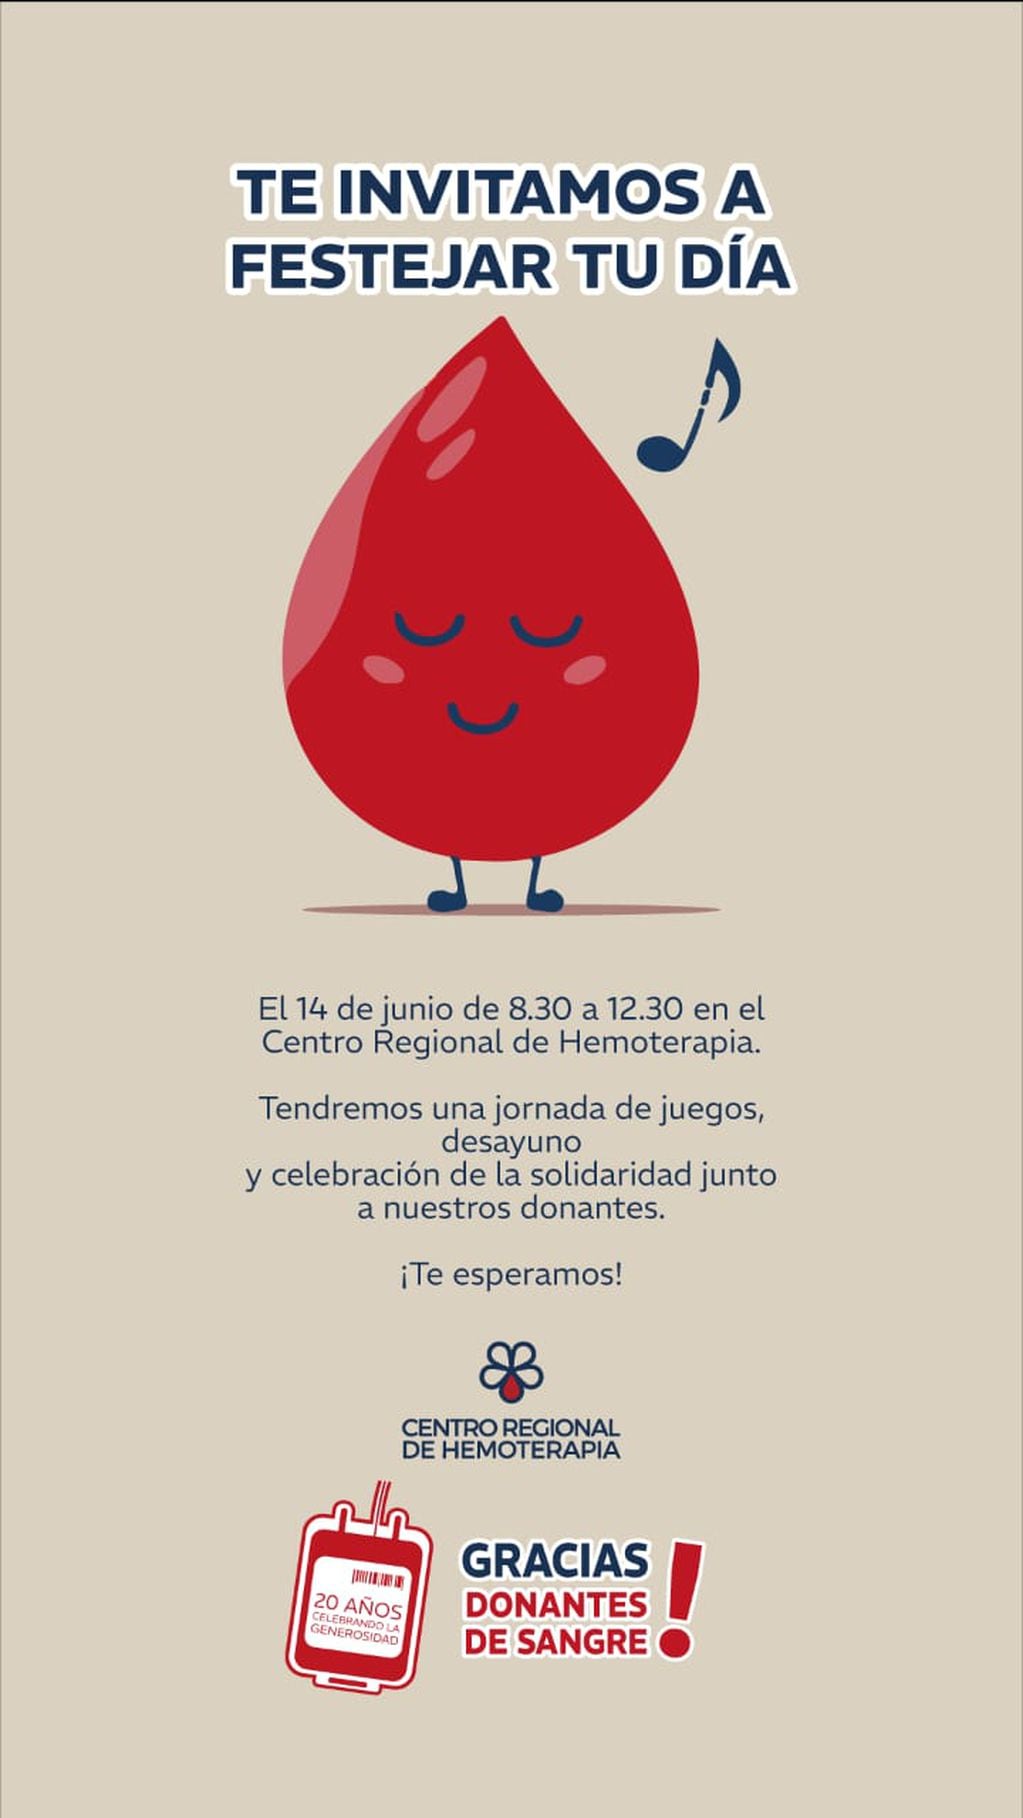 Donar sangre en Mendoza: tras una caída a comienzos de año, subió la cantidad de voluntarios, aunque aún falta. Foto: Gentileza